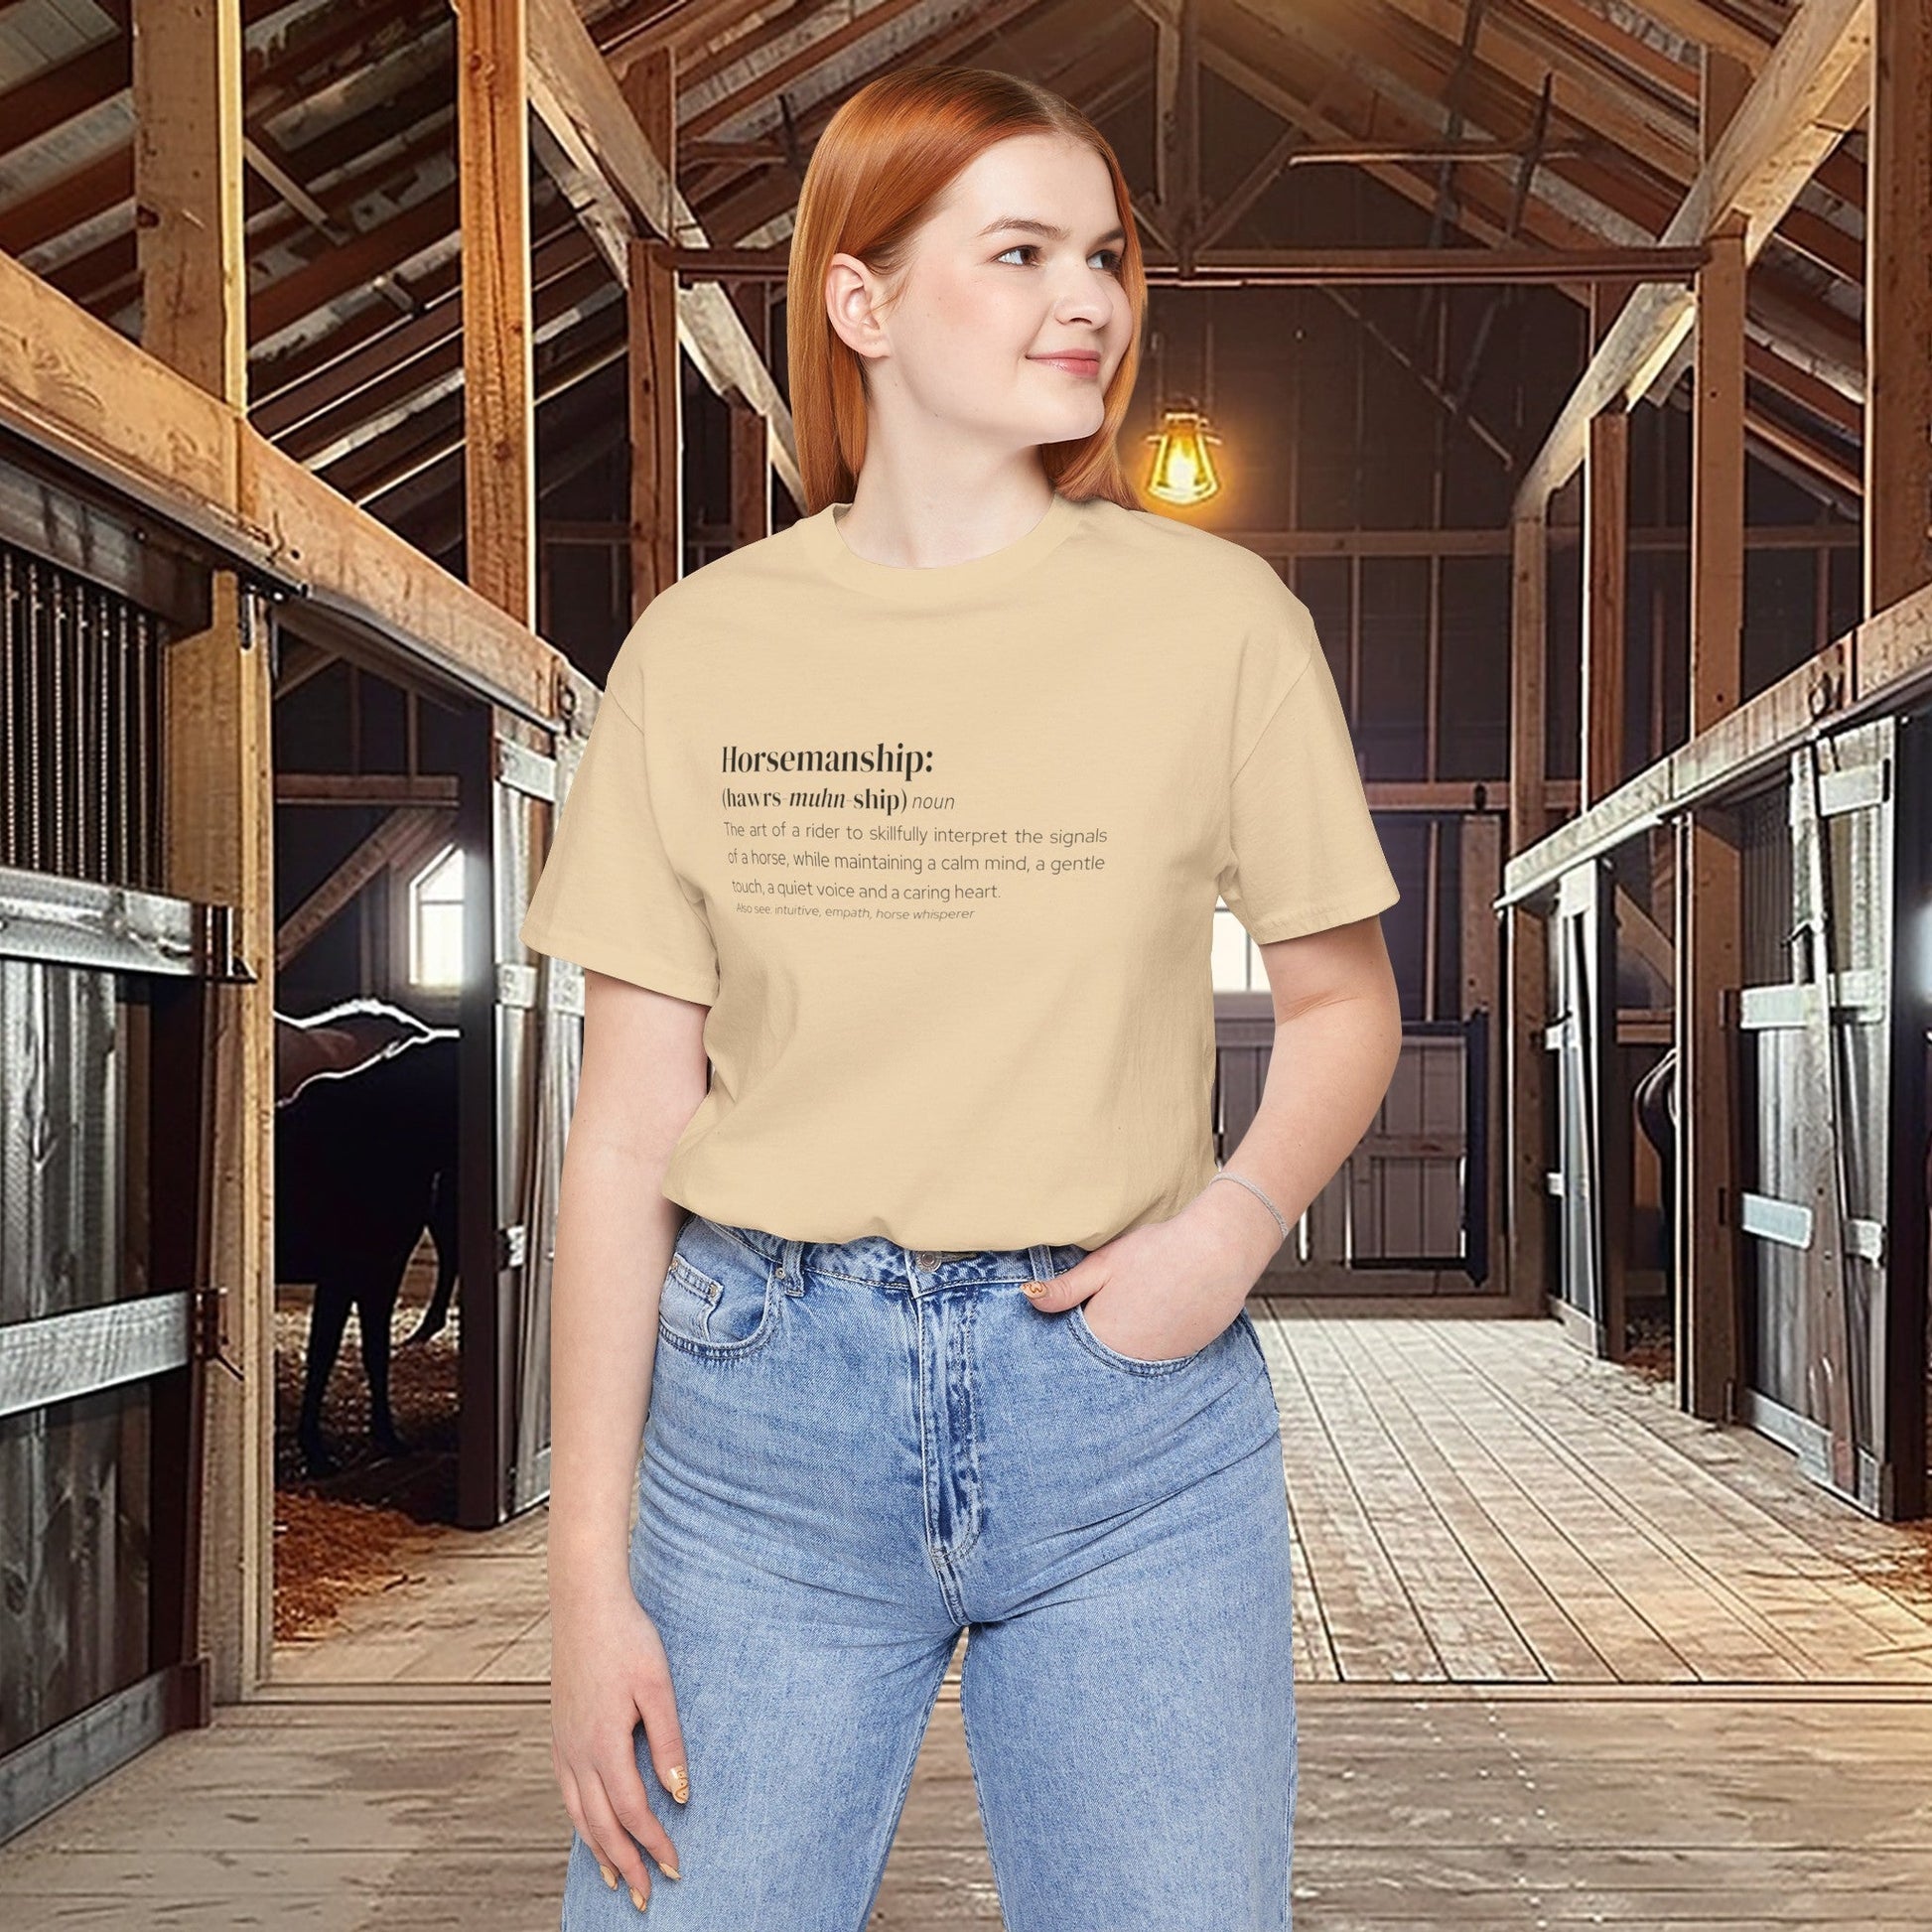 Horsemanship Shirt, Equestrian Horse Training Definition, Barn Ring Shirt - FlooredByArt